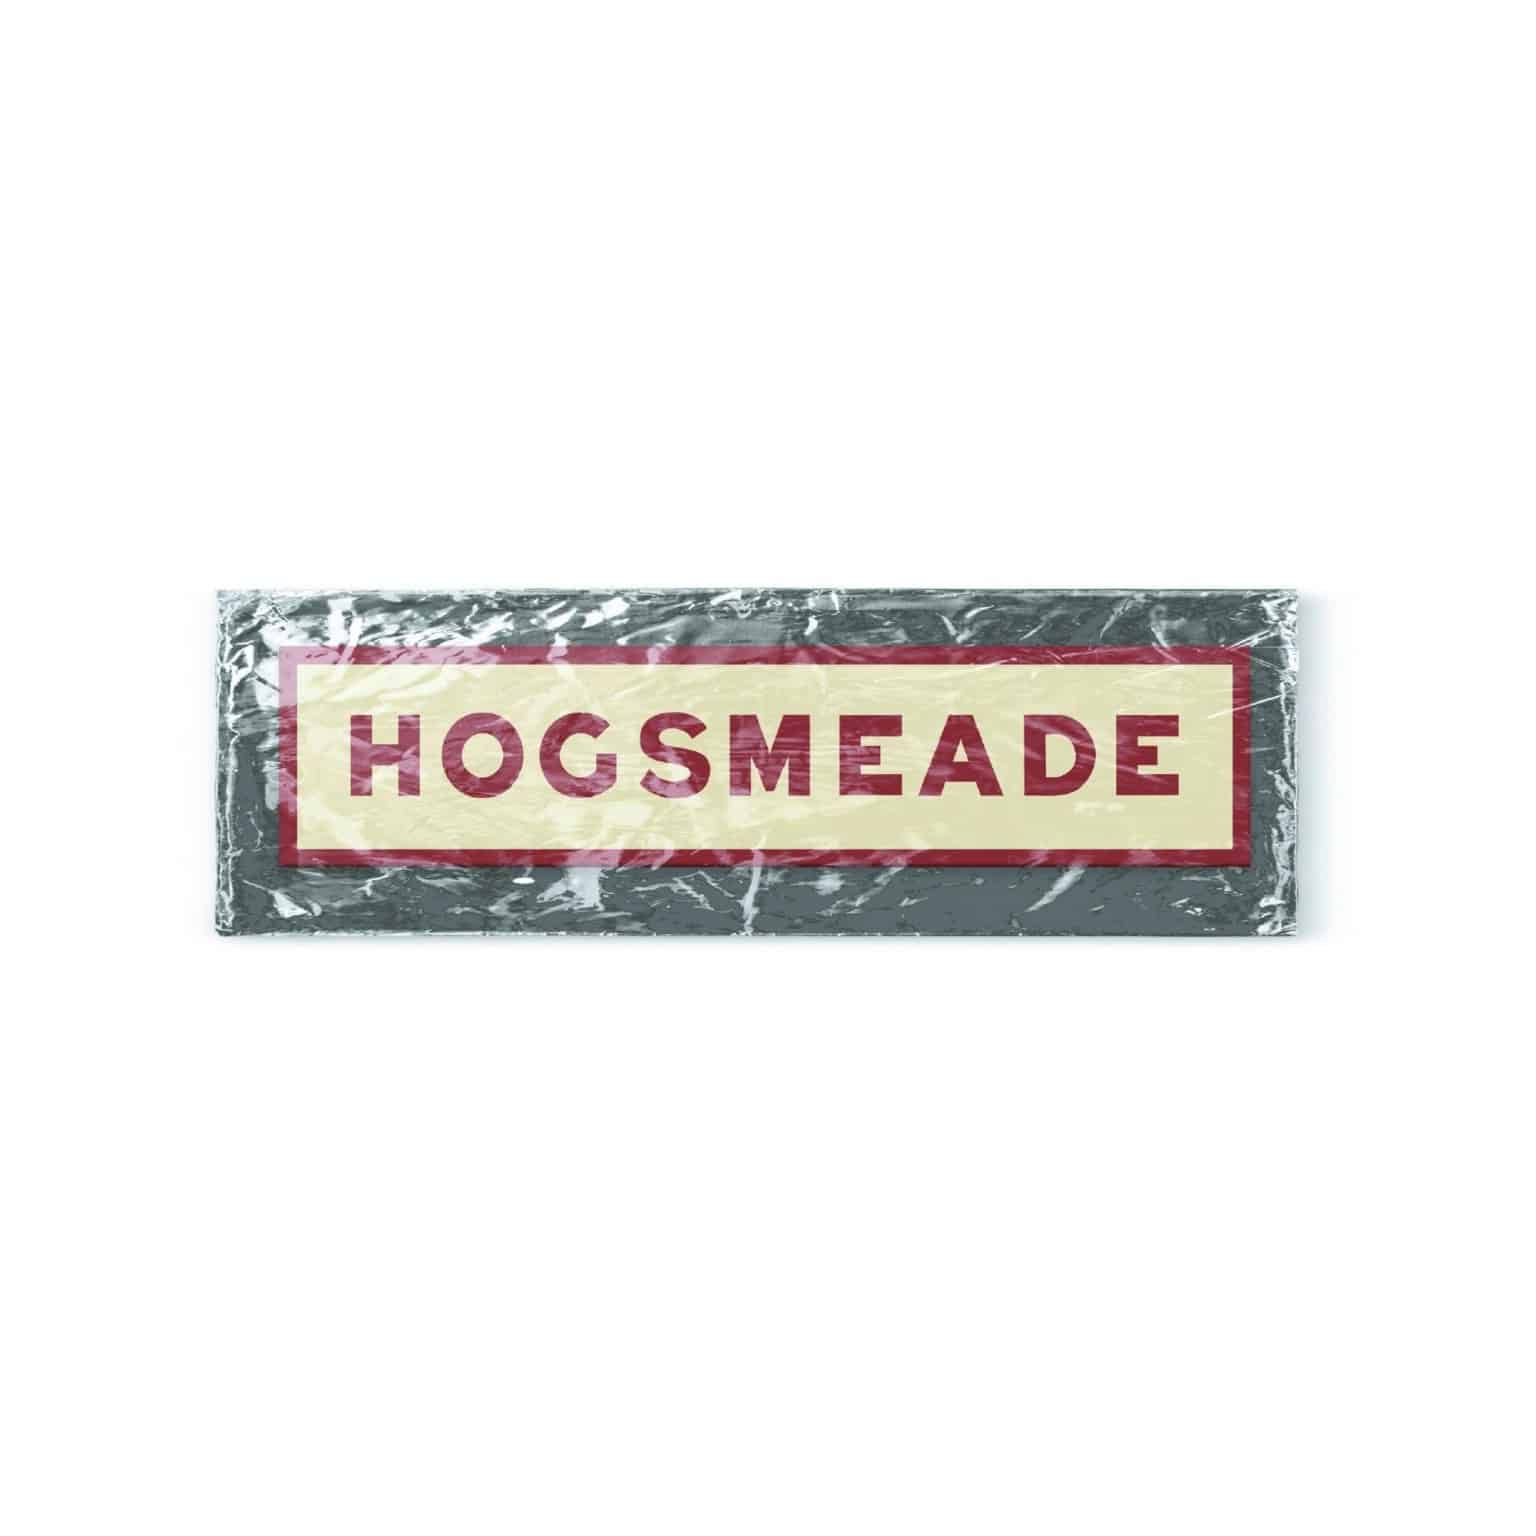 Hogsmade3 Sihir Dükkanı - Tüm Harry Potter Ürünleri